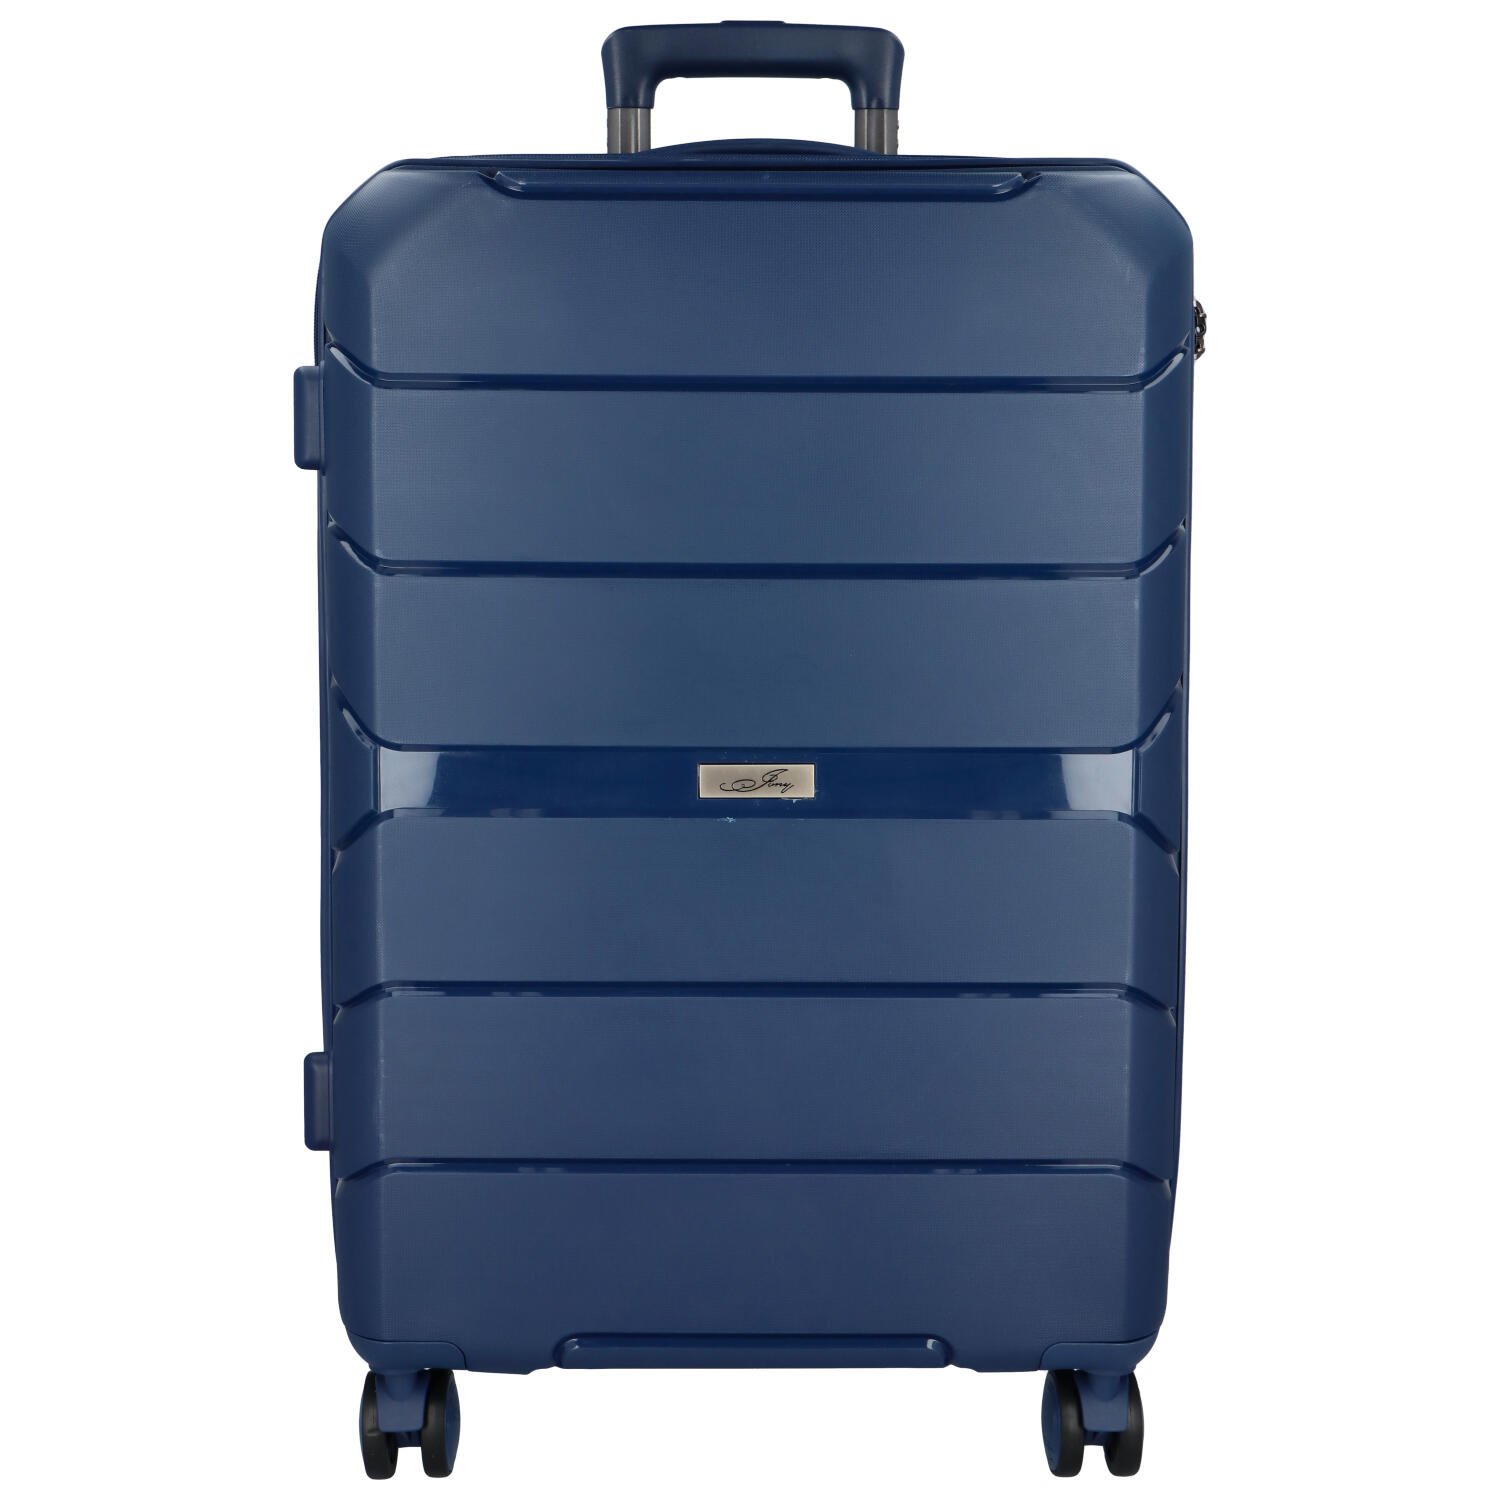 Cestovní plastový kufr Franco velikosti L, modrý